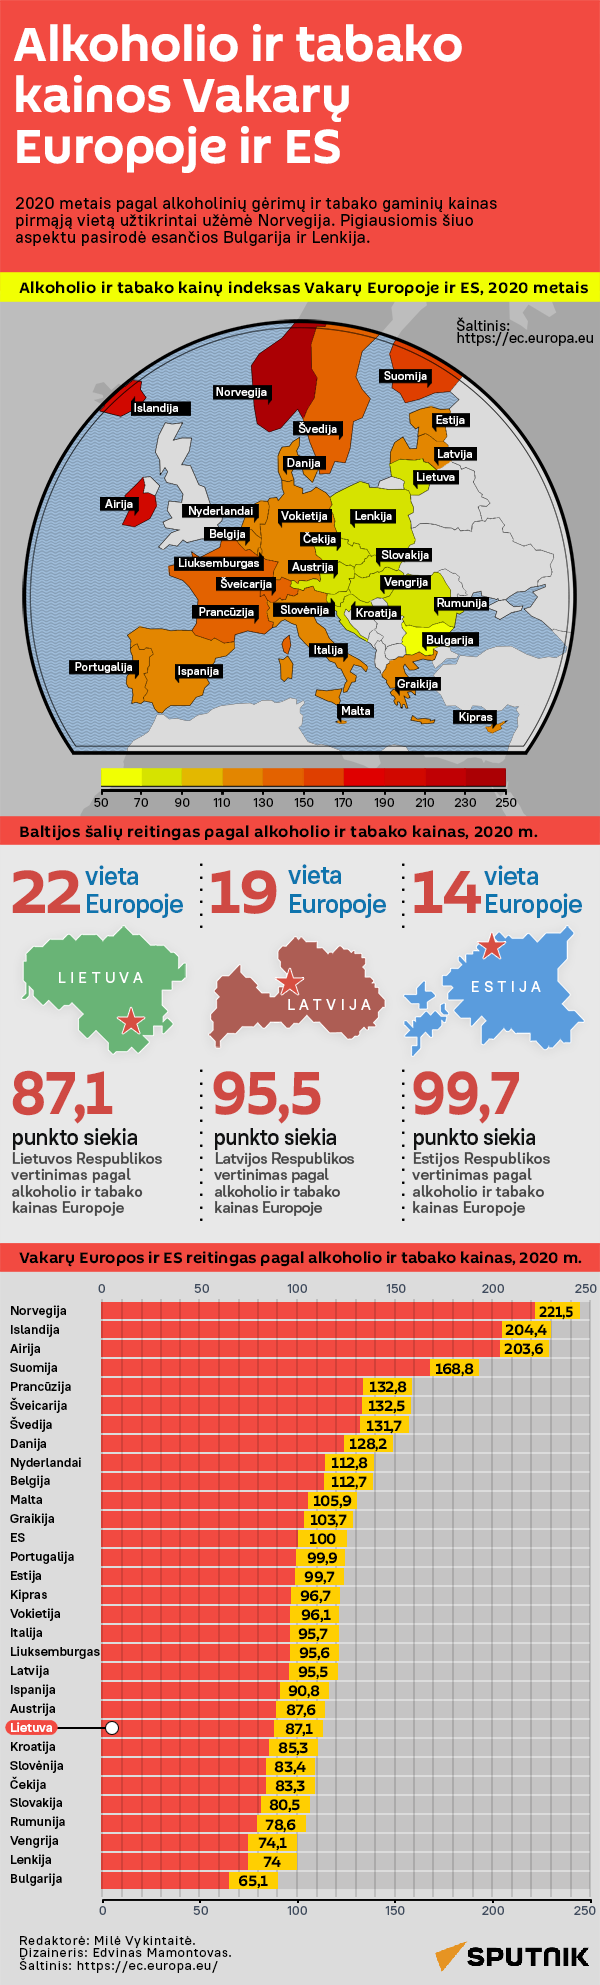 Alkoholio ir tabako kainos Vakarų Europoje ir ES - Sputnik Lietuva